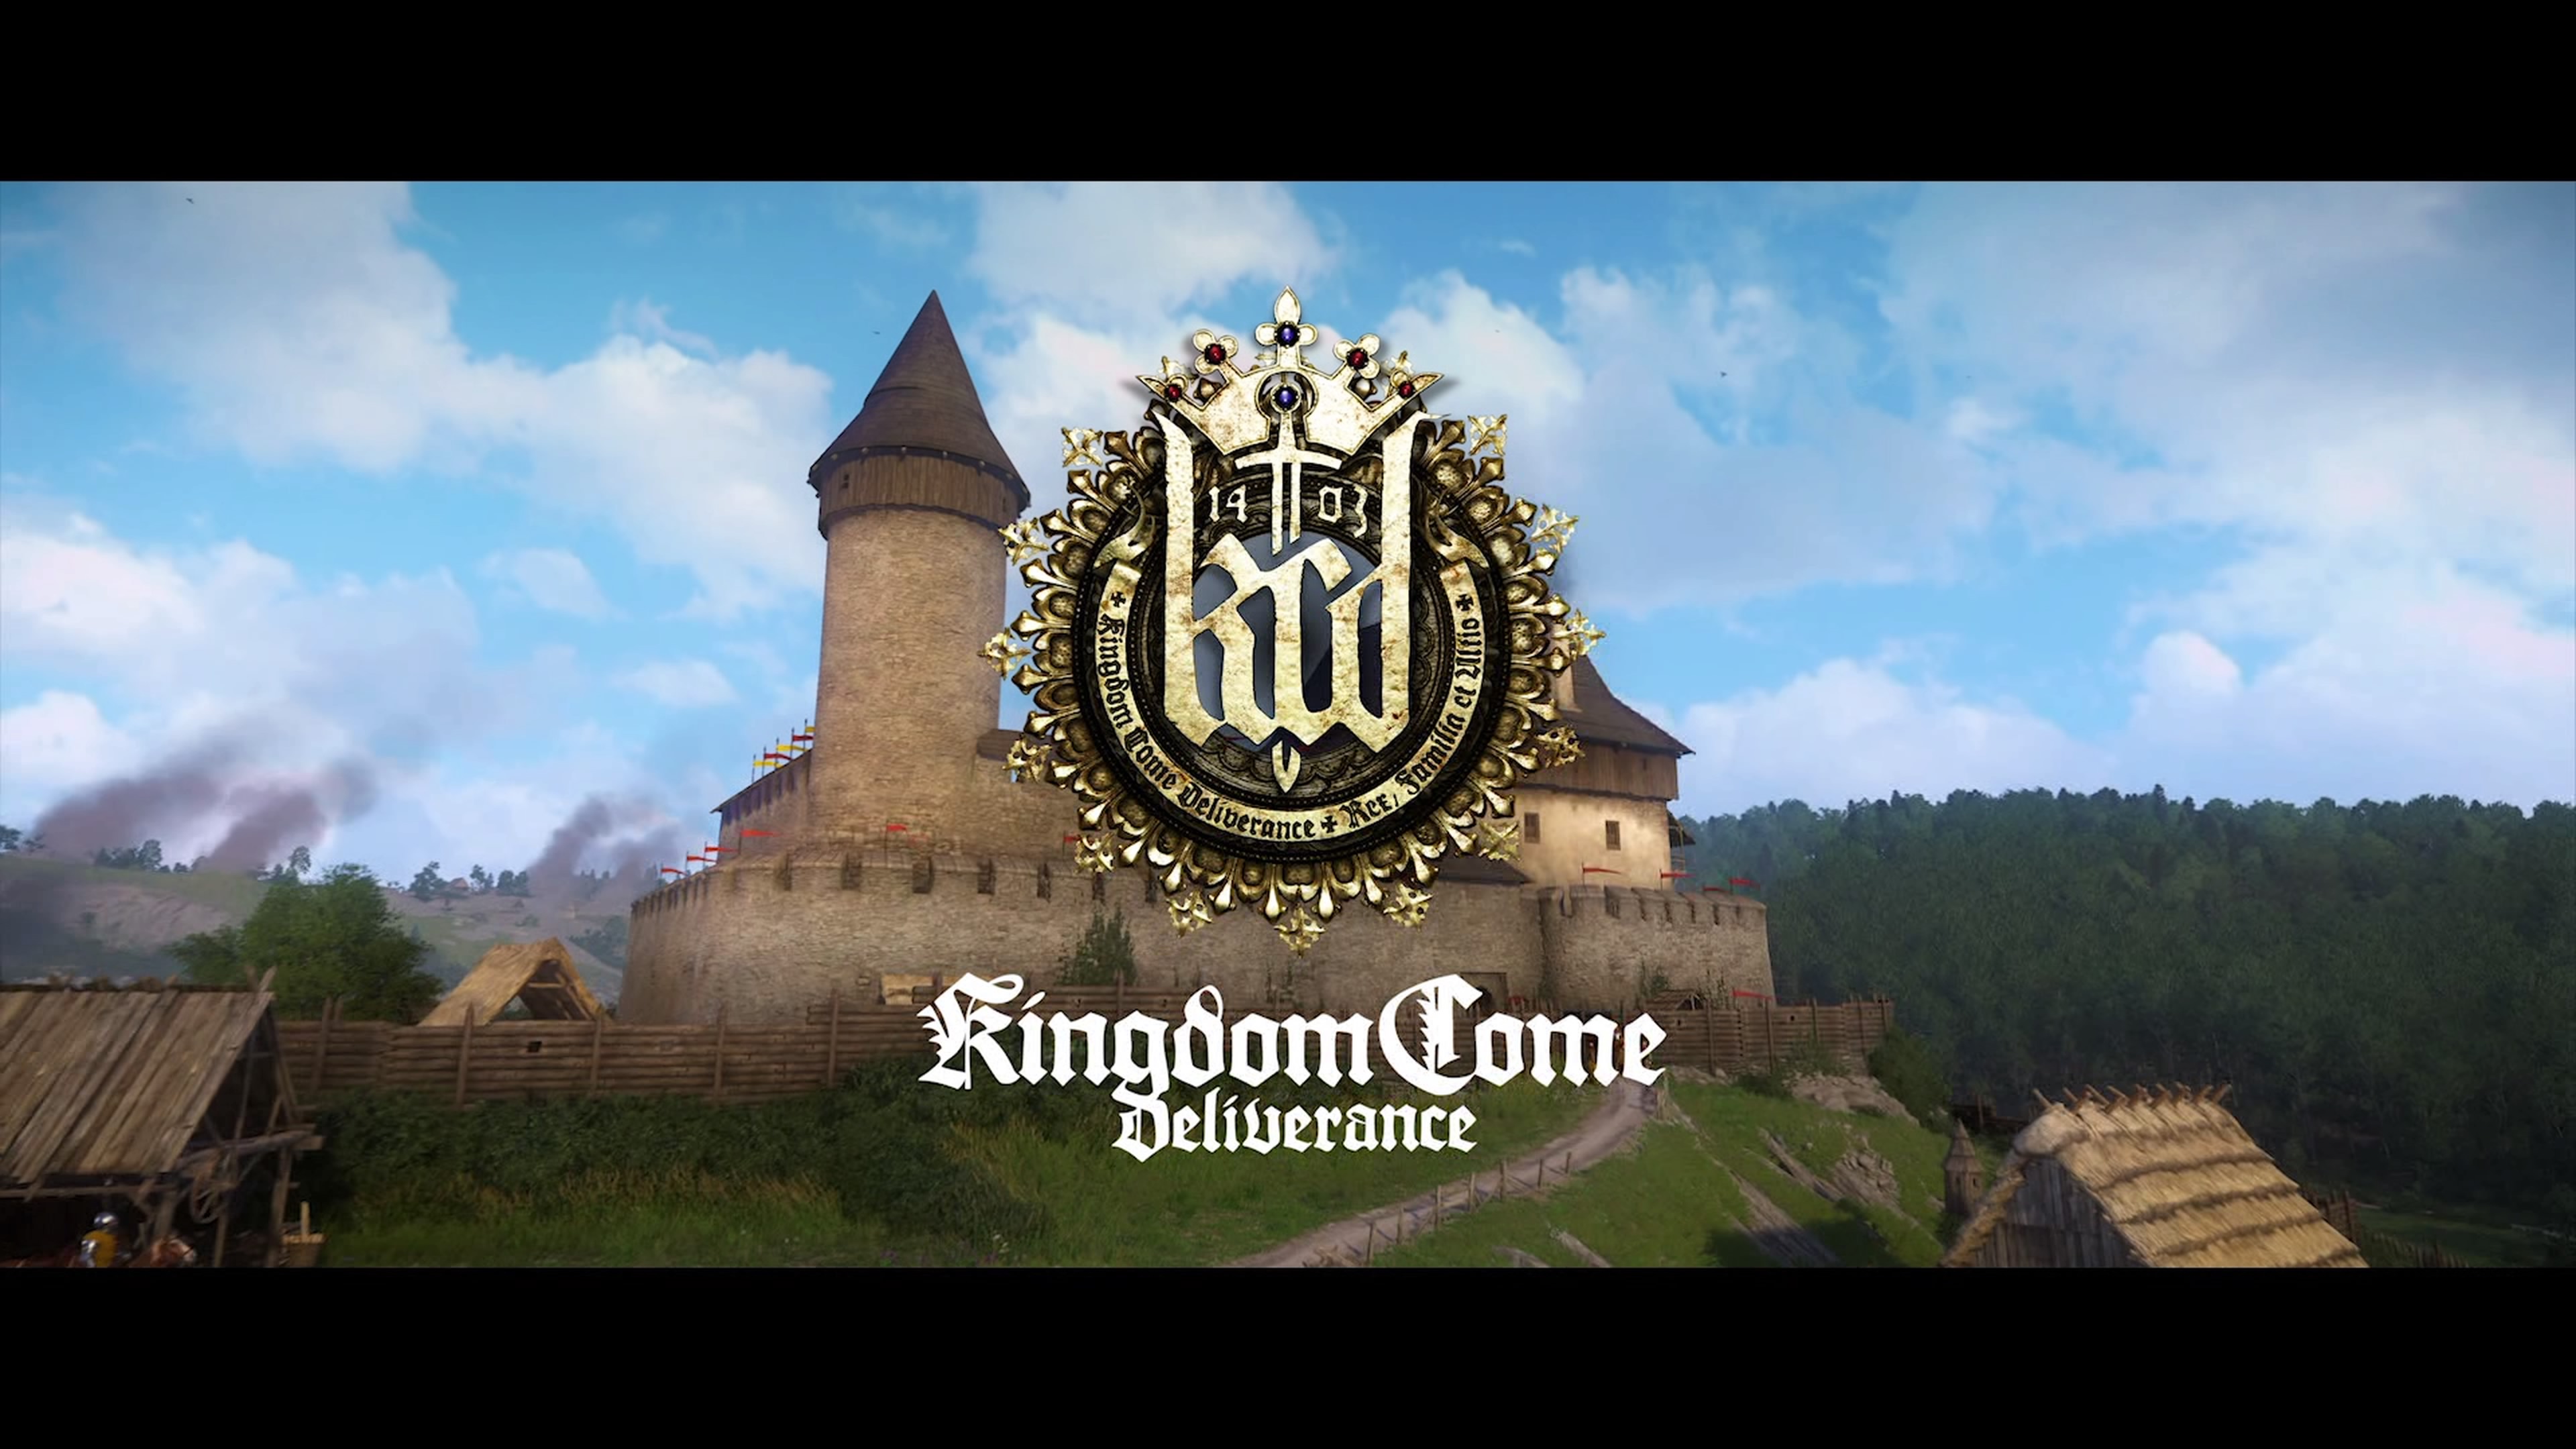 Kingdom Come: Deliverance Review in Progress – Bohemian Rhapsody